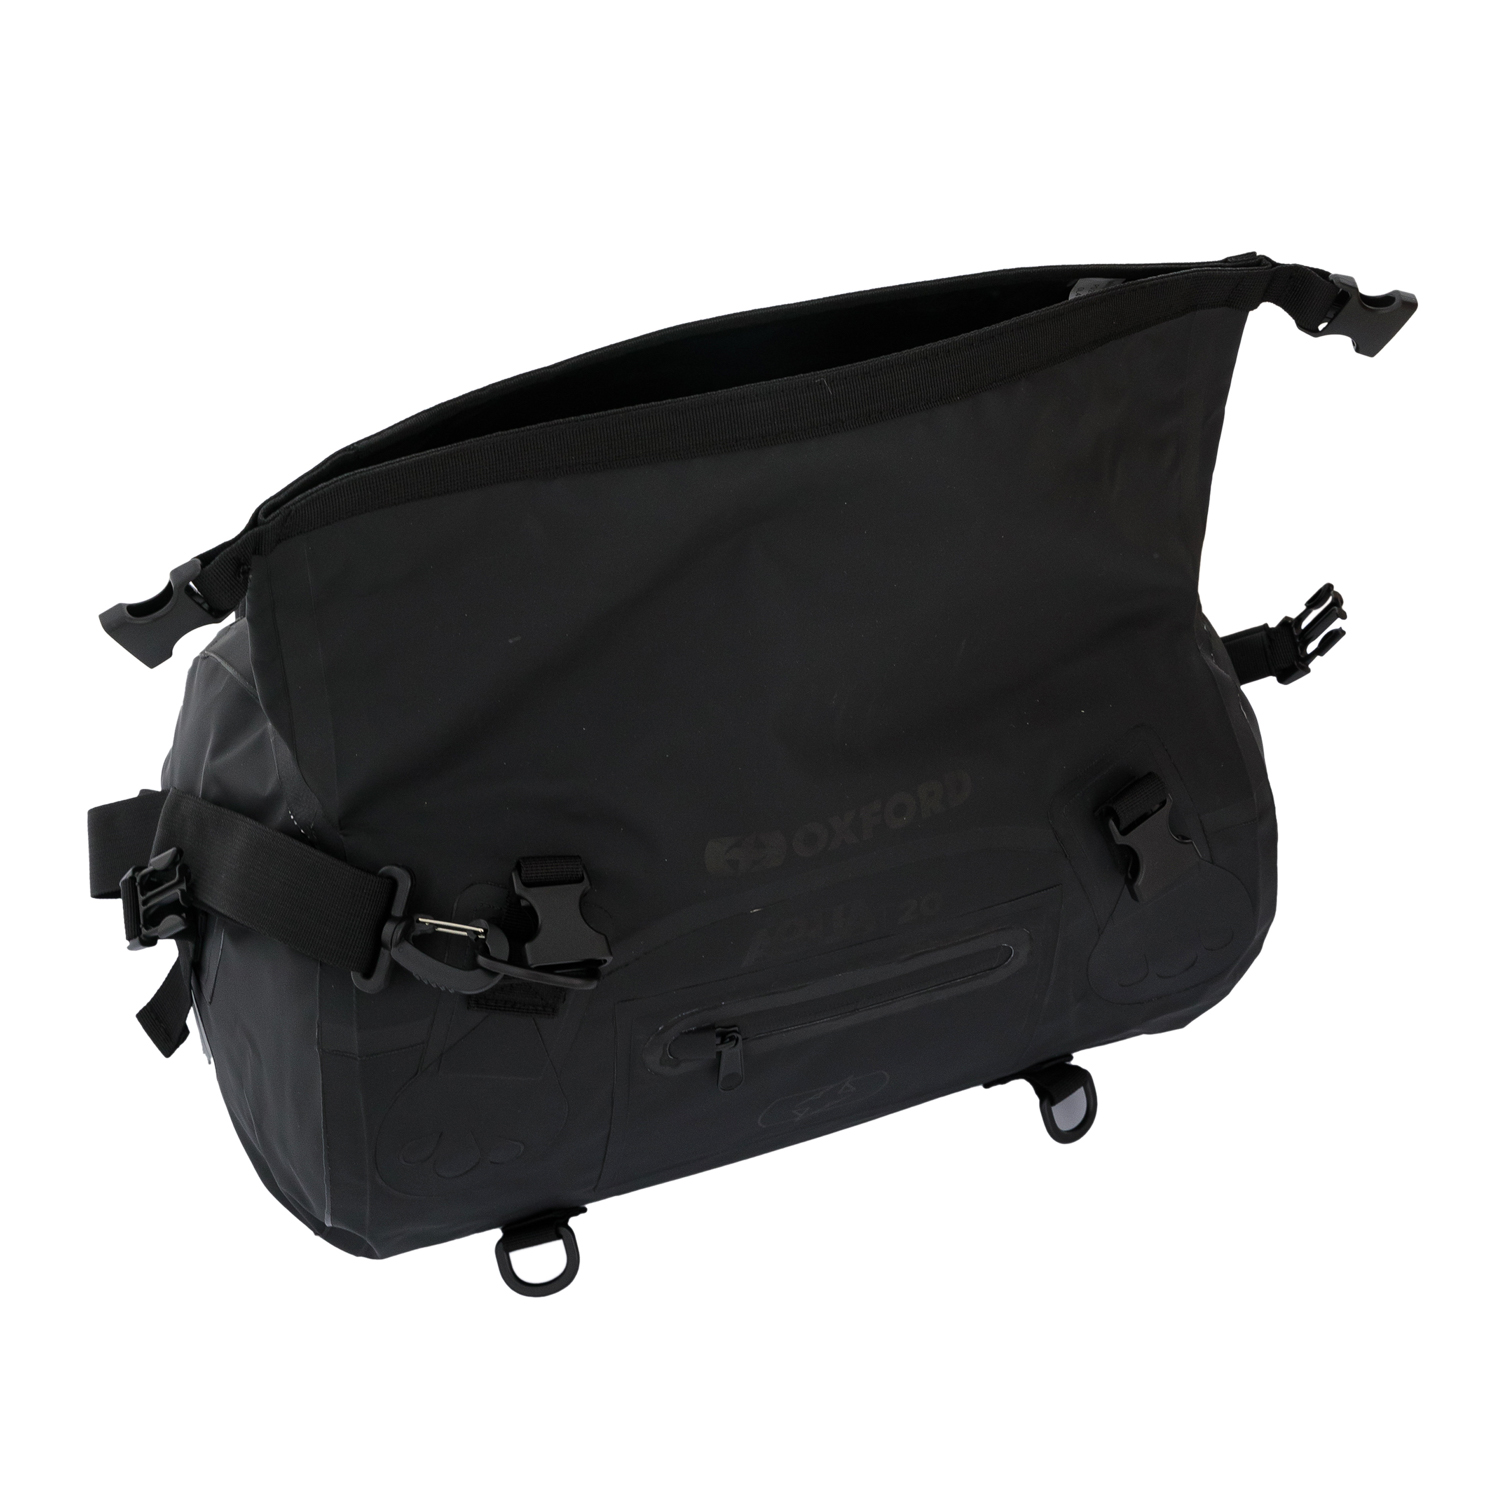 Велосумка Oxford Aqua T-20 Roll Bag Black